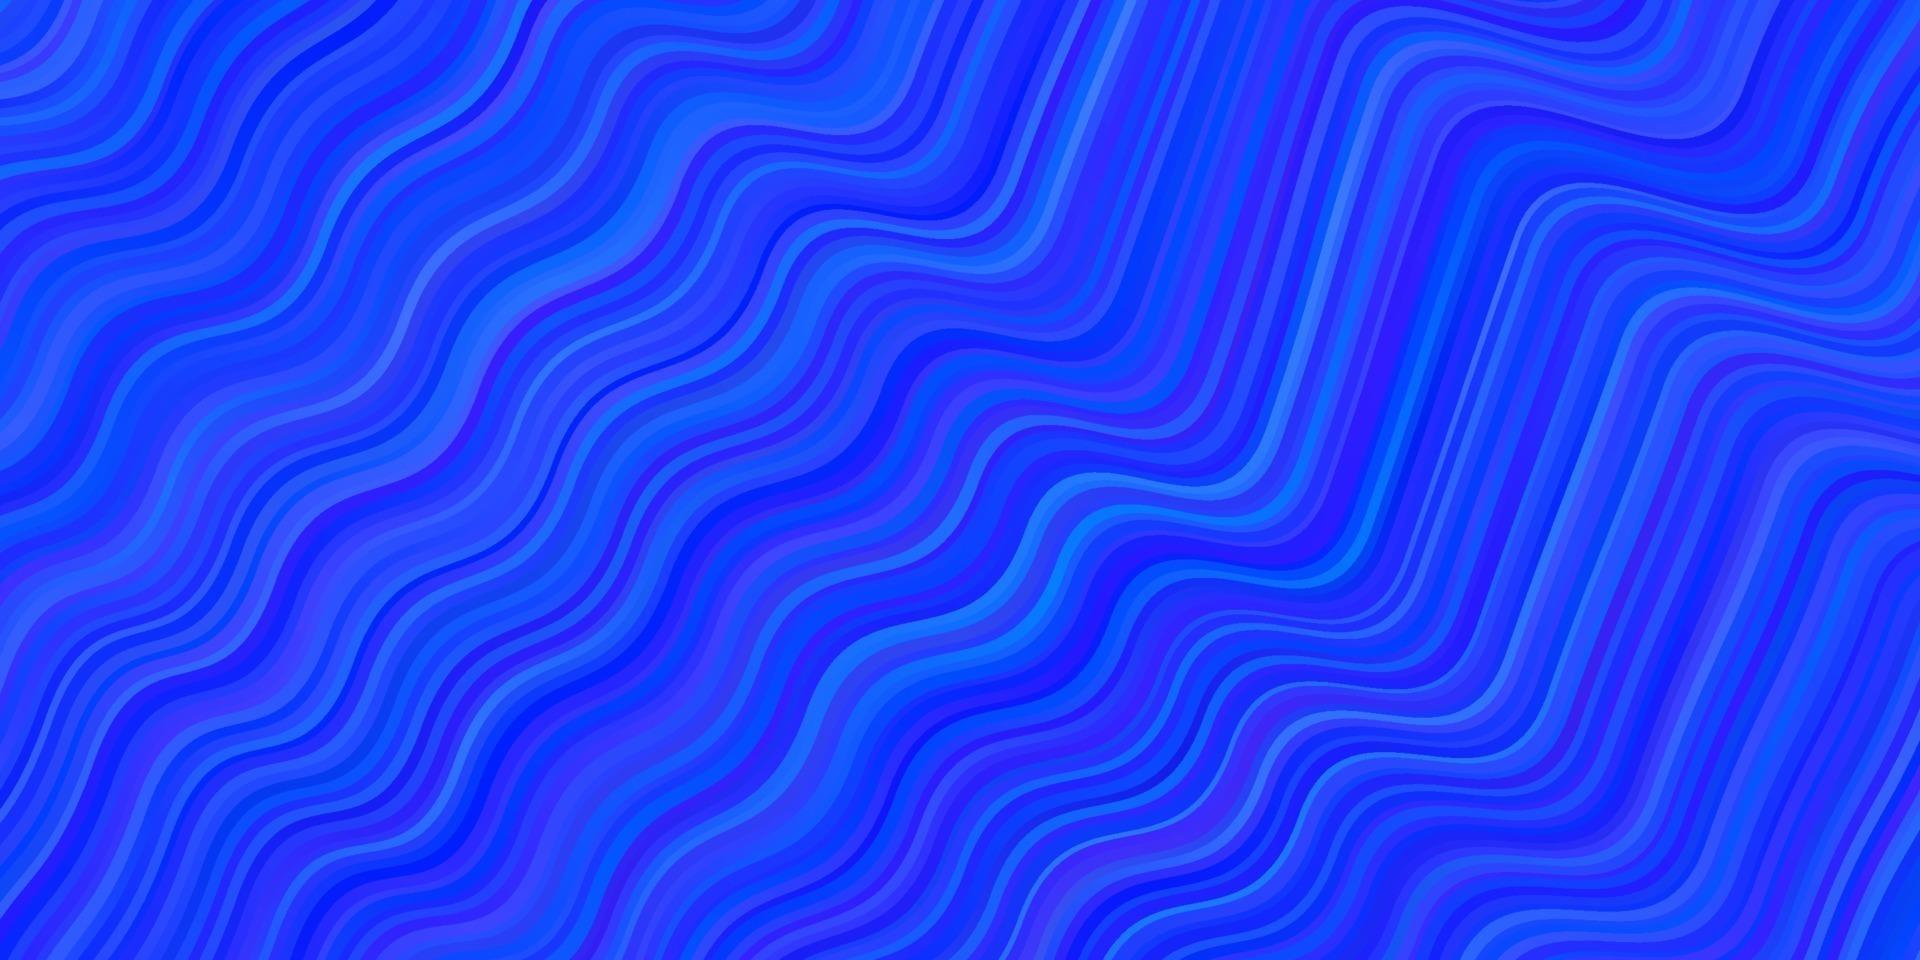 fundo vector azul claro com linhas irônicas.